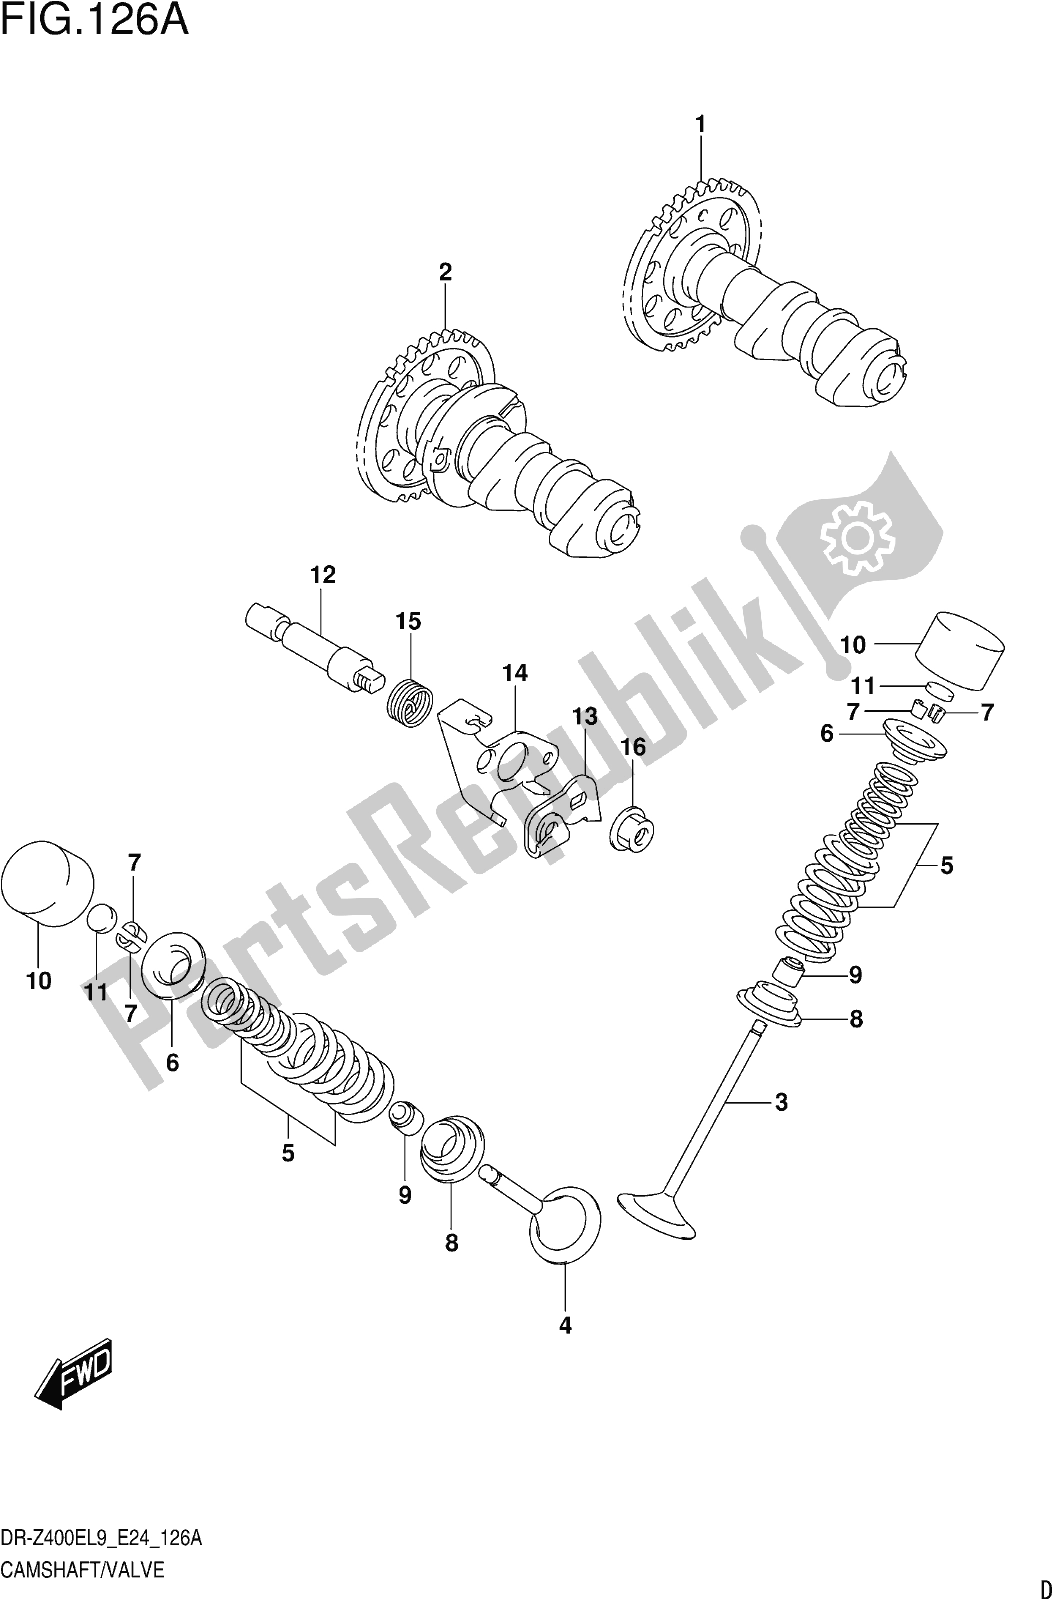 Alle onderdelen voor de Fig. 126a Camshaft/valve van de Suzuki DR-Z 400E 2019